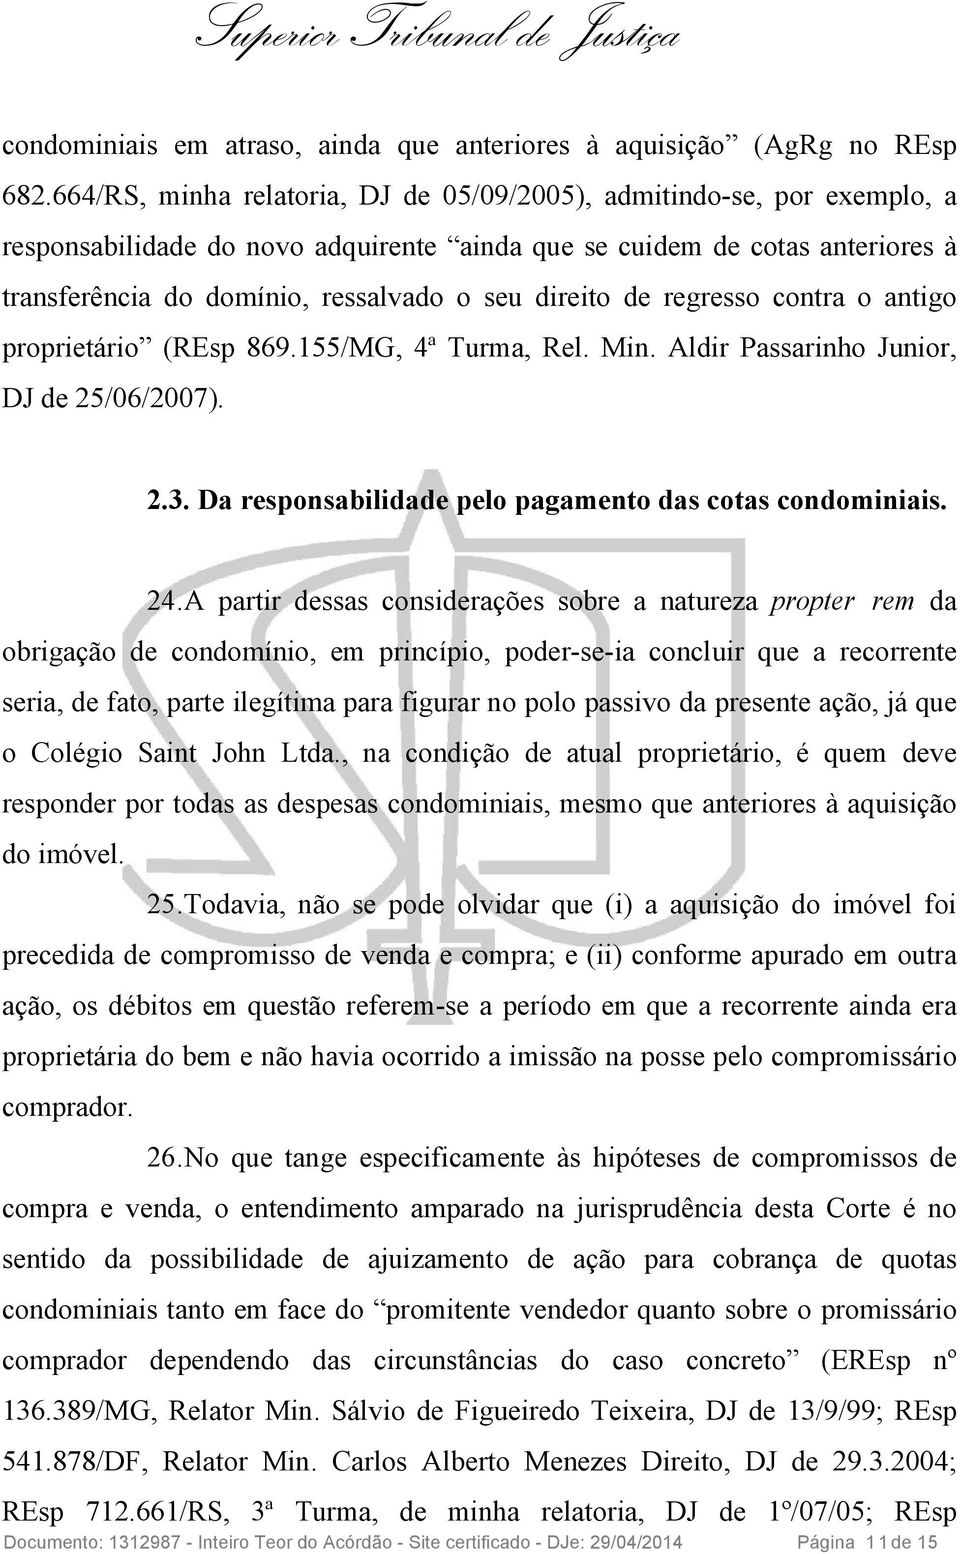 direito de regresso contra o antigo proprietário (REsp 869.155/MG, 4ª Turma, Rel. Min. Aldir Passarinho Junior, DJ de 25/06/2007). 2.3. Da responsabilidade pelo pagamento das cotas condominiais. 24.